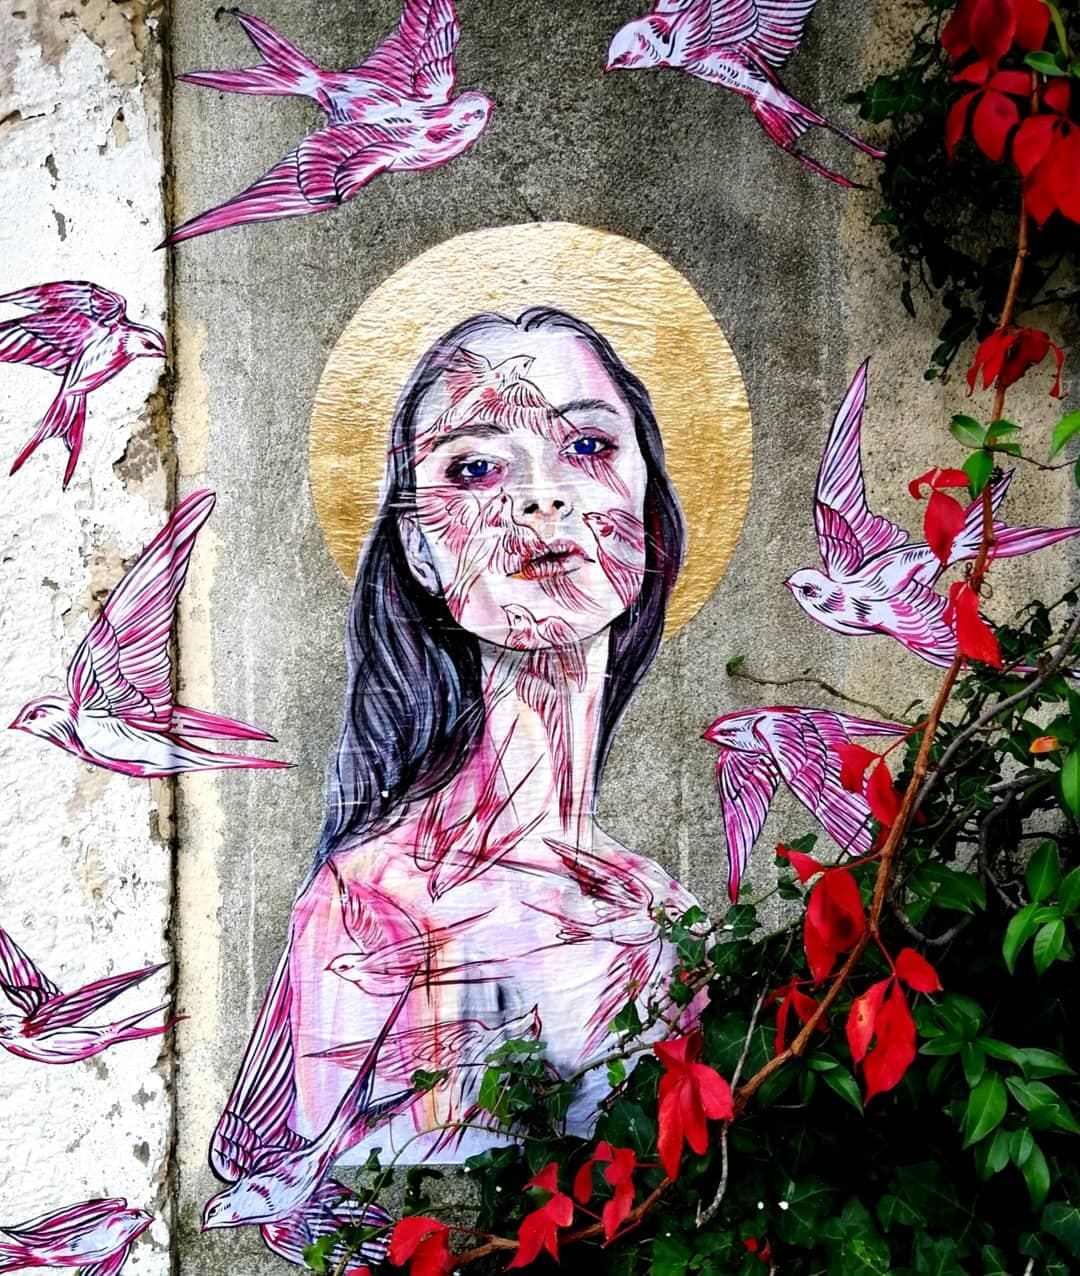 jacqueline de montaigne paste up street art because art matters